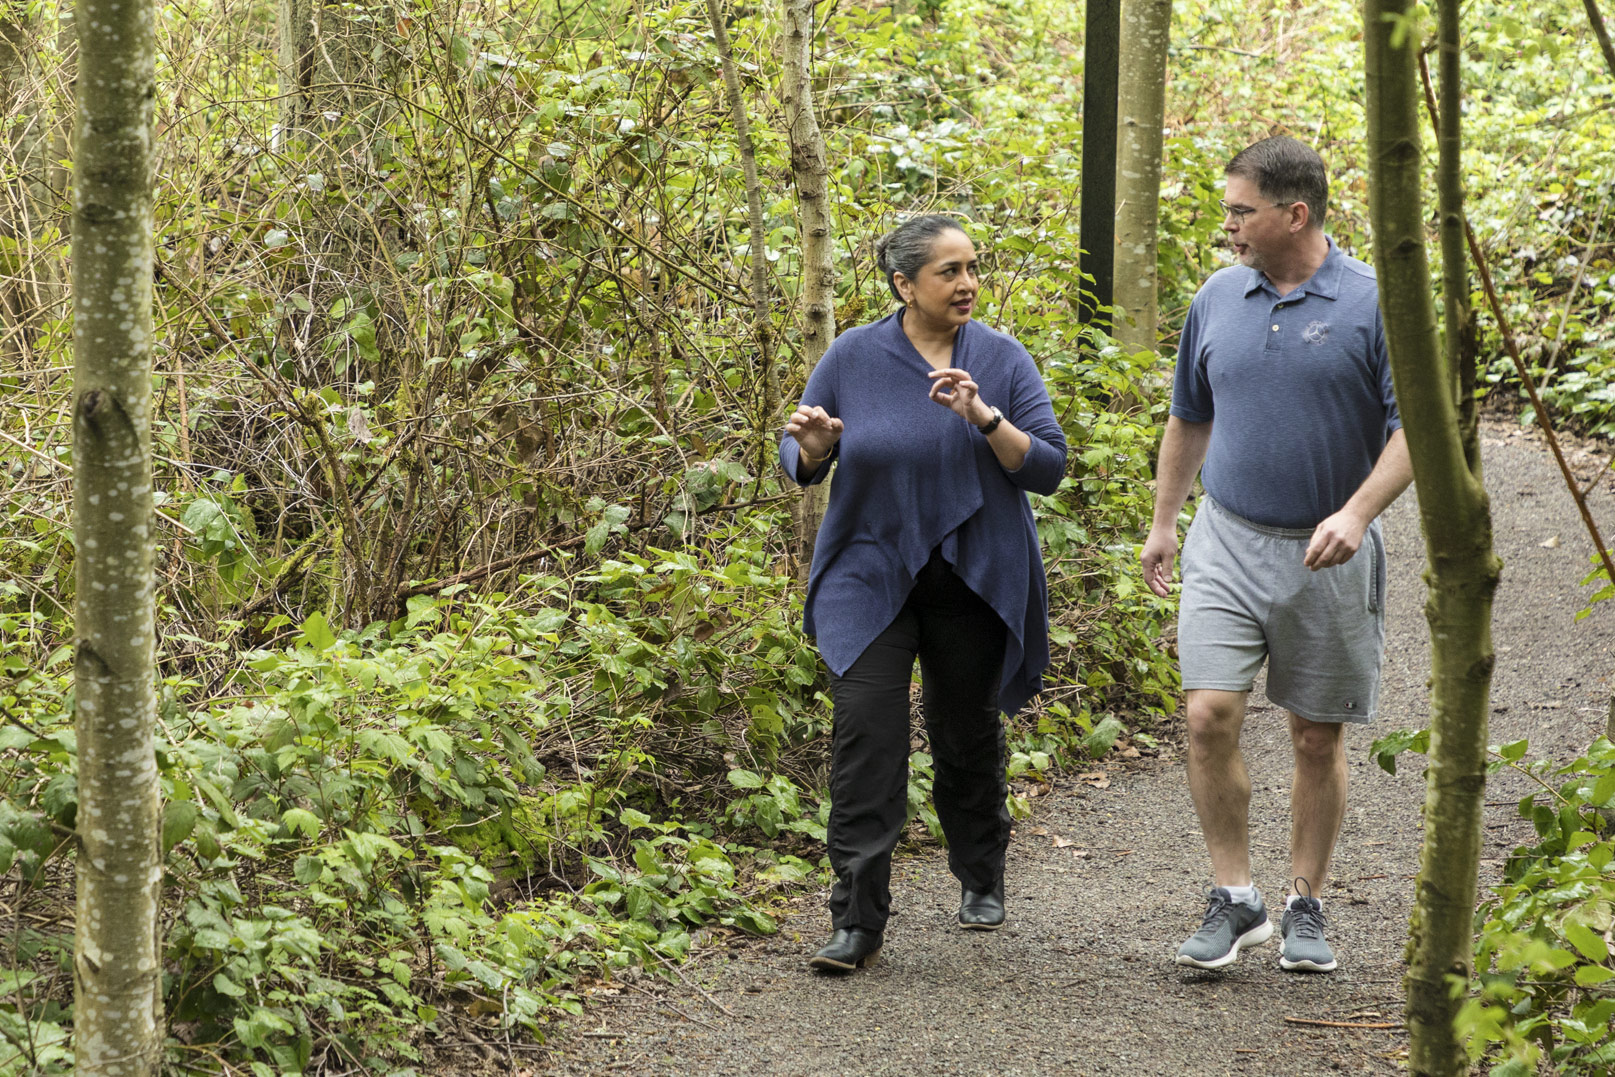 Пракрия и Салливан прогуливаются по лесной тропинке в кампусе Microsoft в Редмонде, Вашингтон.